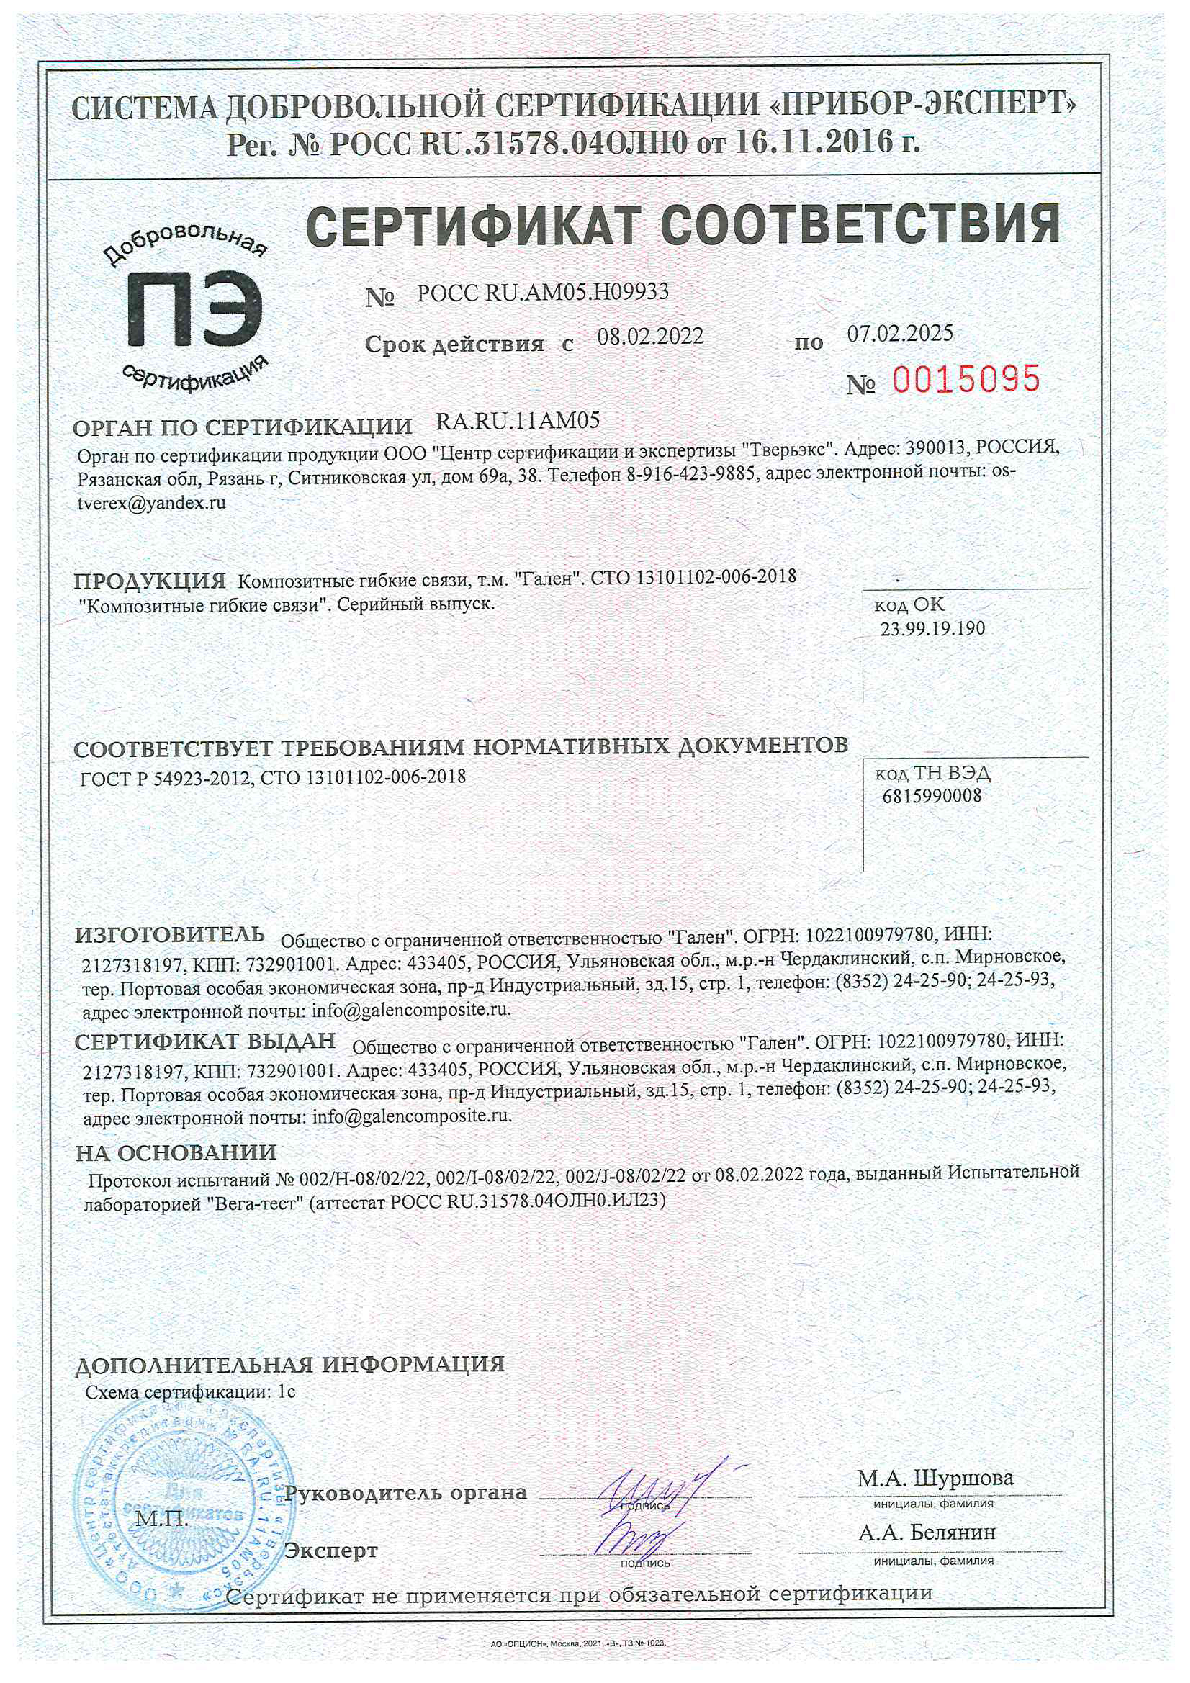 Сертификат соответствия на композитные гибкие связи